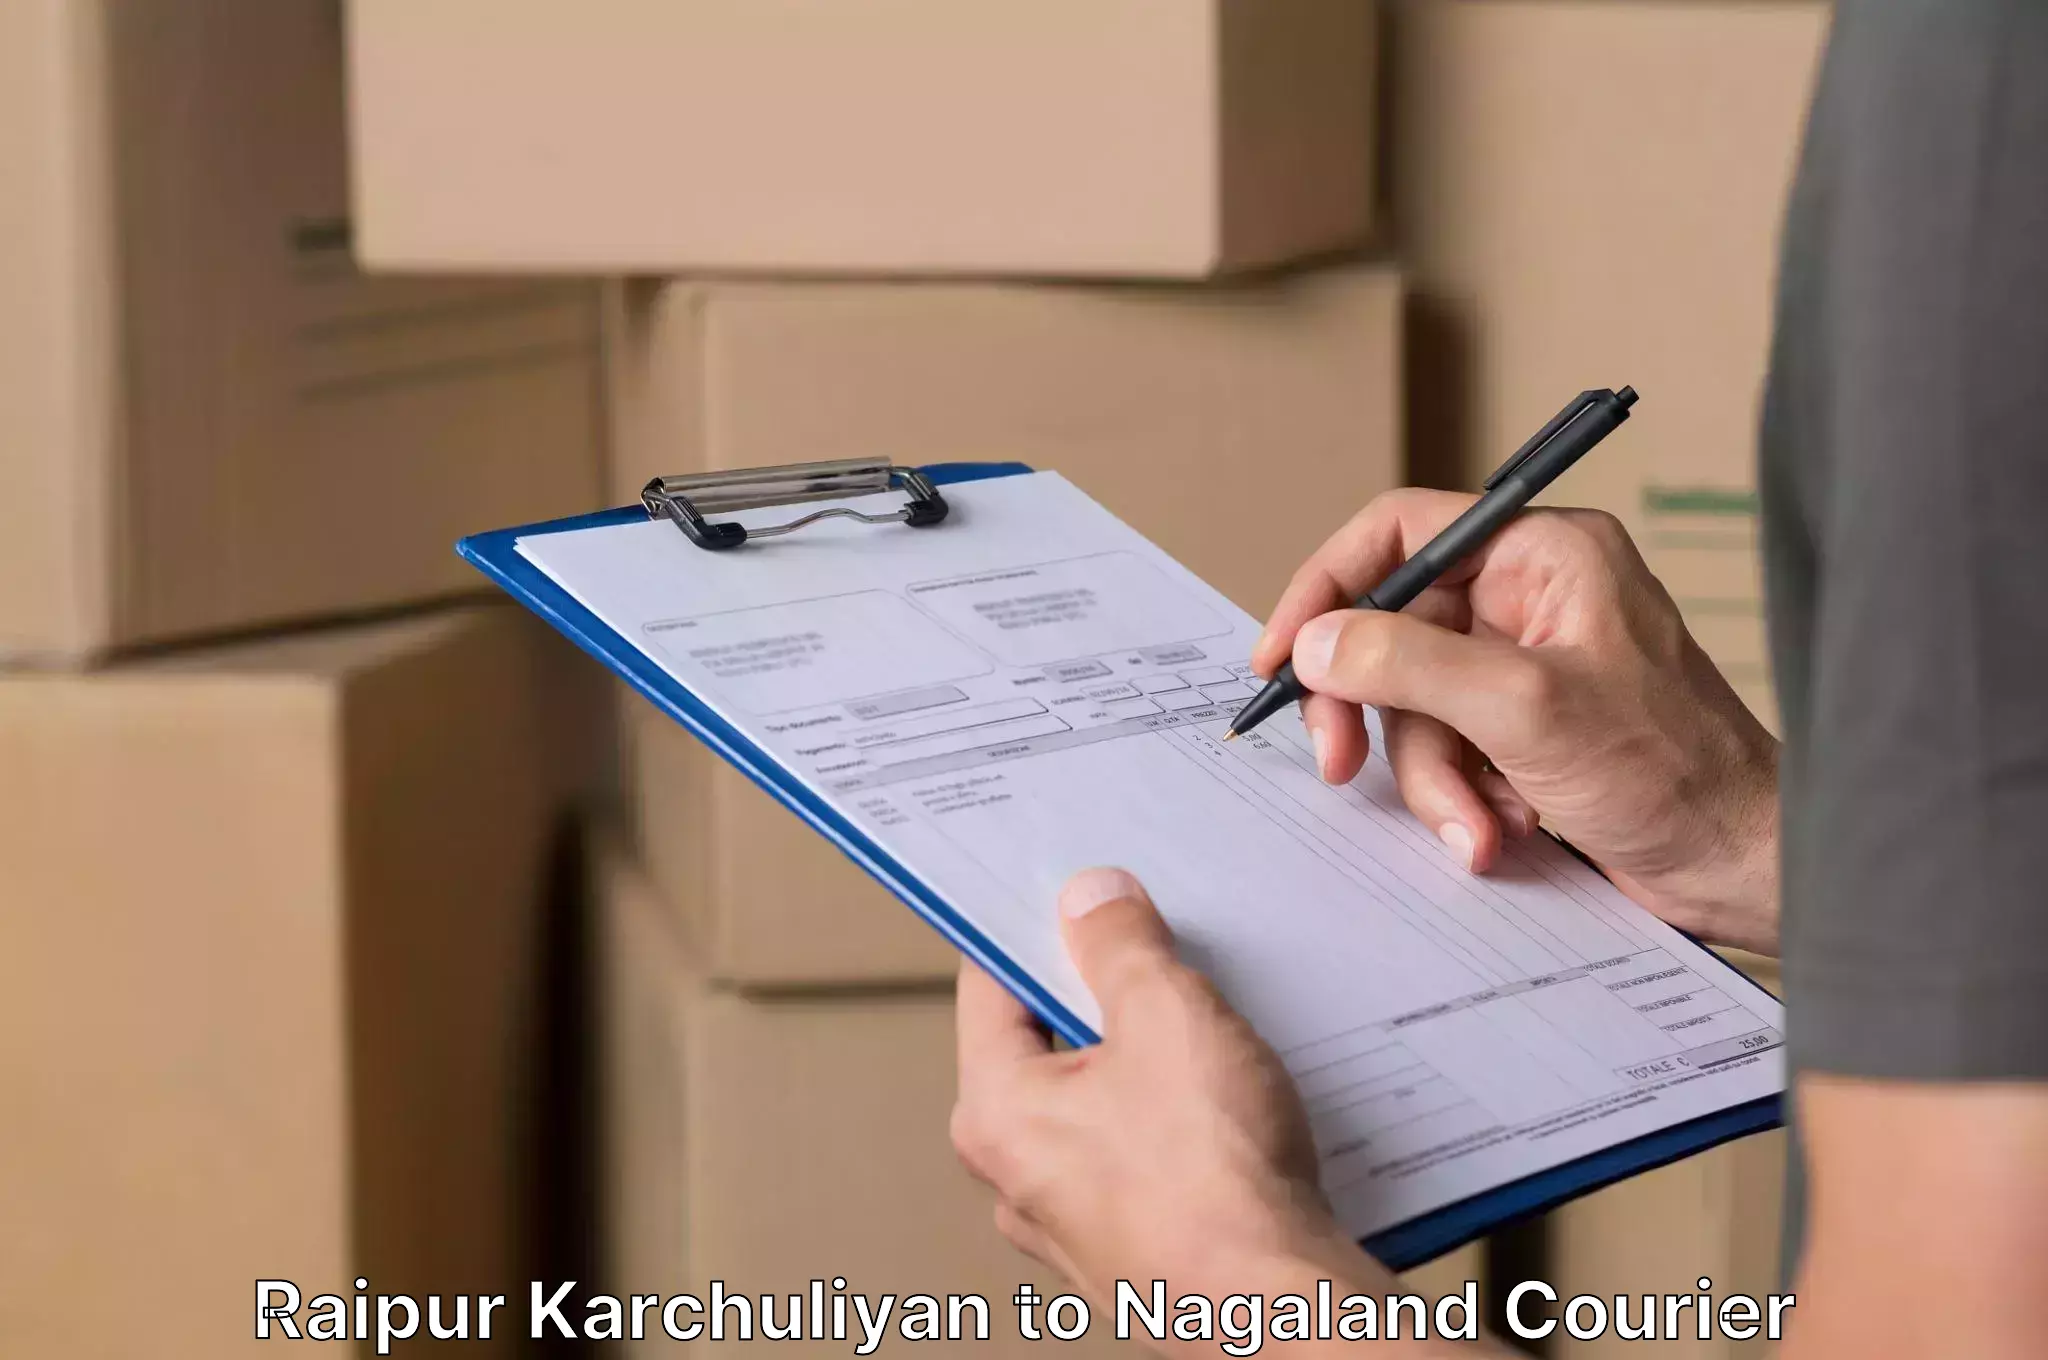 Furniture moving assistance Raipur Karchuliyan to NIT Nagaland